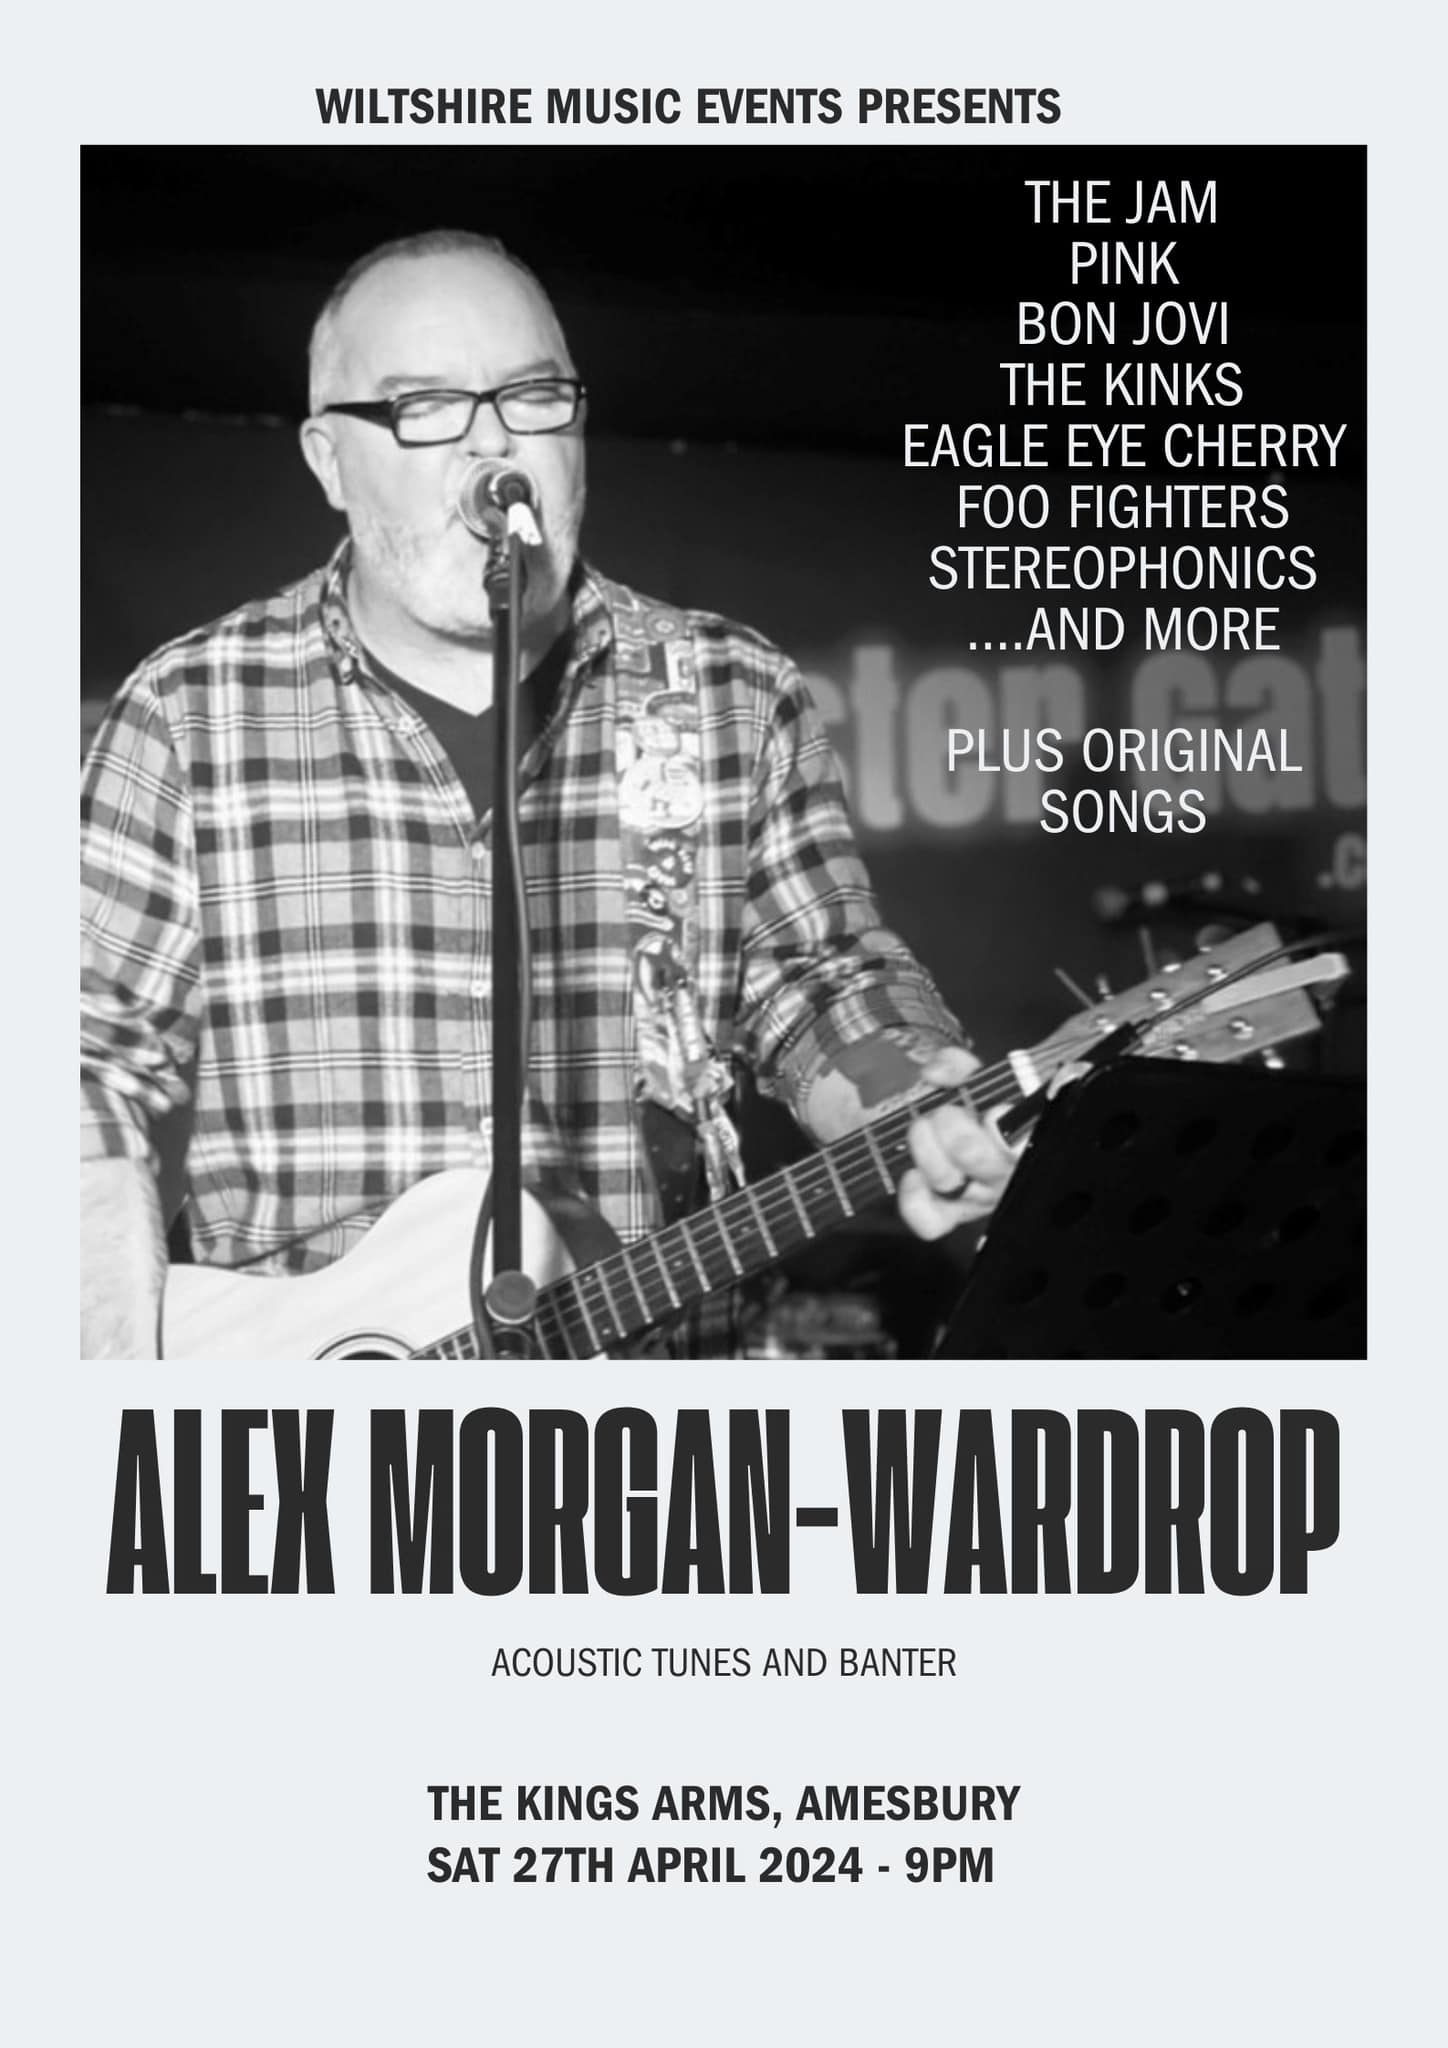 Alex Morgan-Wardrop